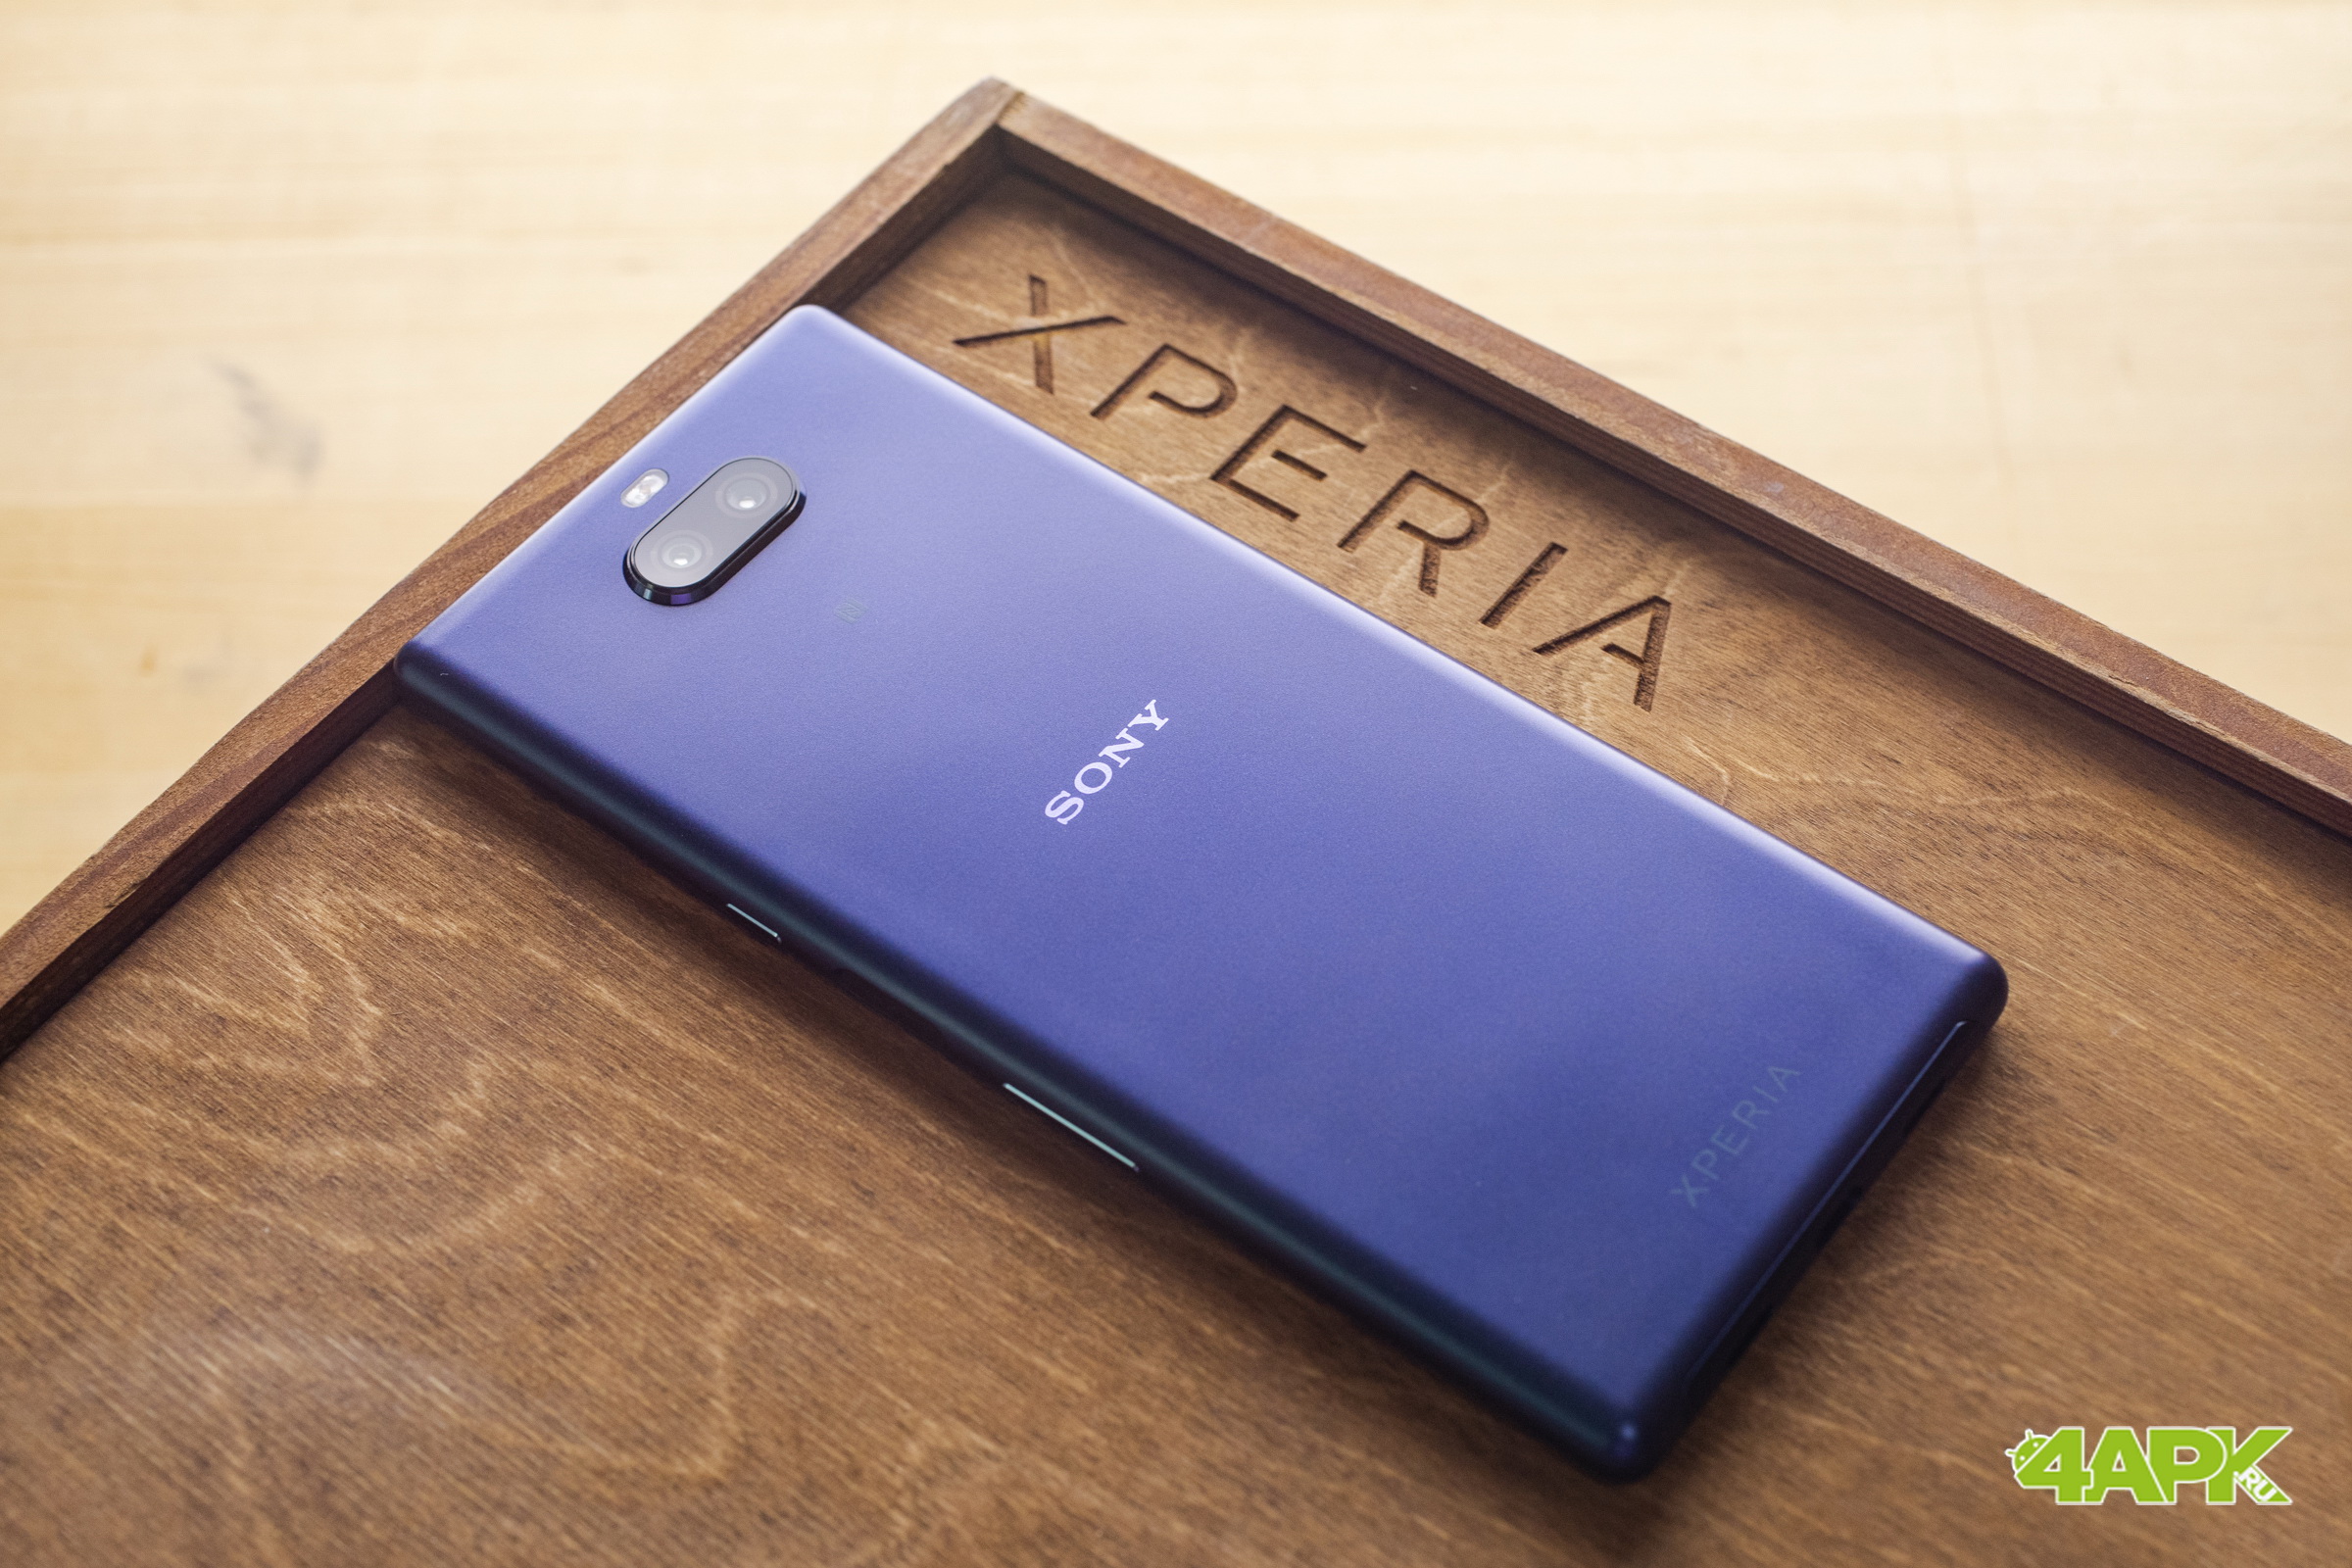  Быстрый обзор Sony Xperia 10 Plus: среднячок не претендующий на флагман Другие устройства  - original-4